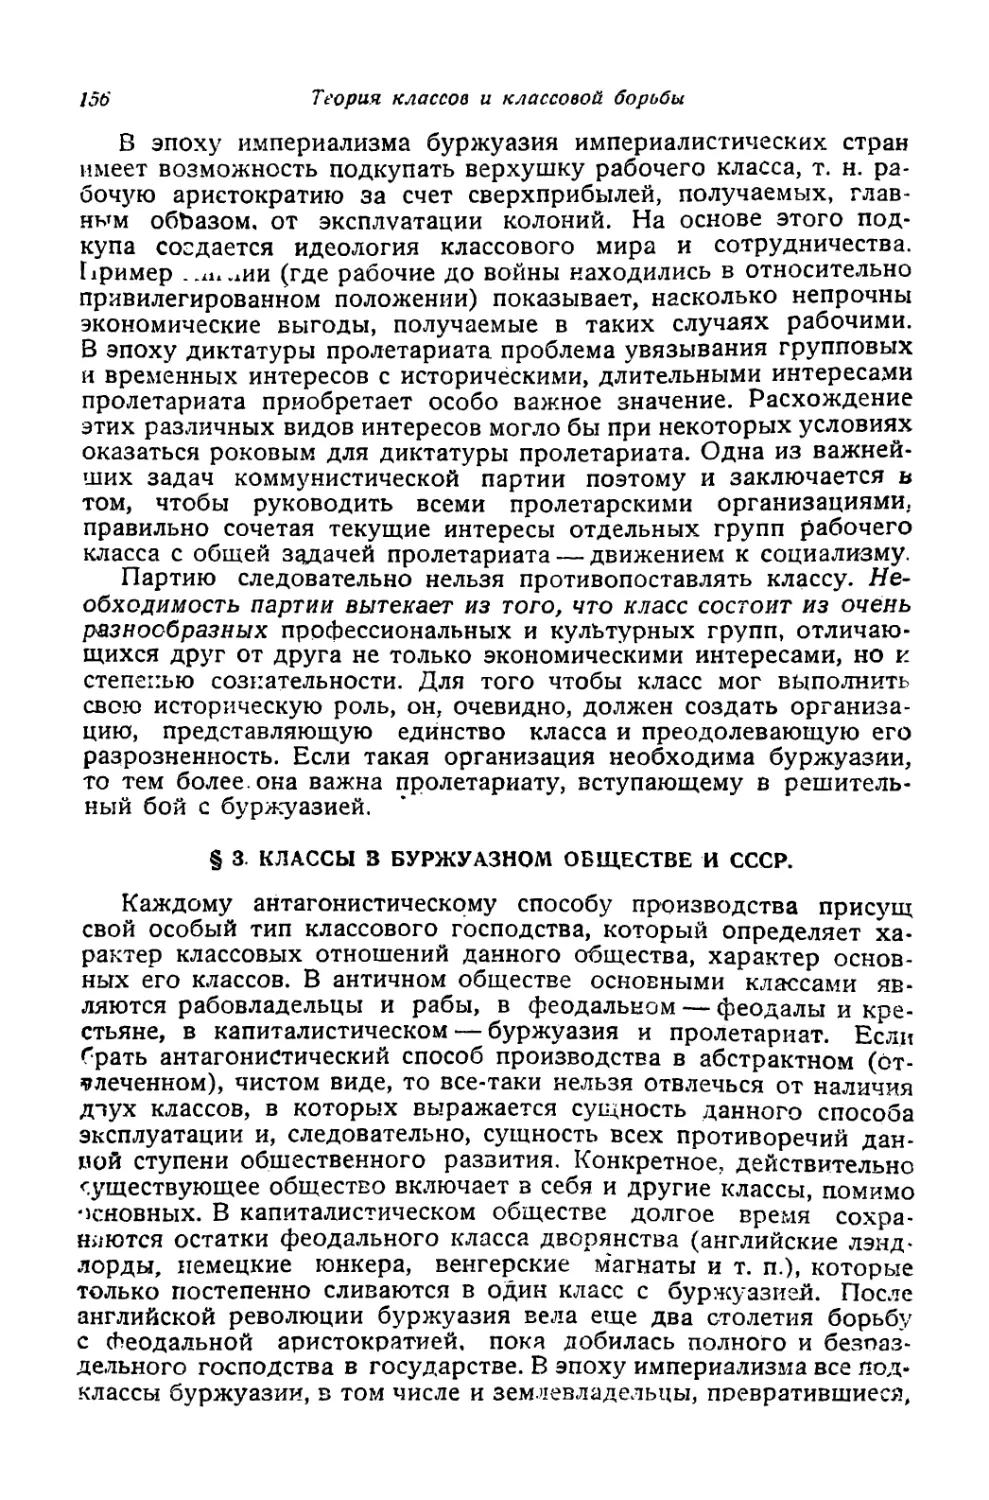 § 3. Классы в буржуазном обществе и СССР